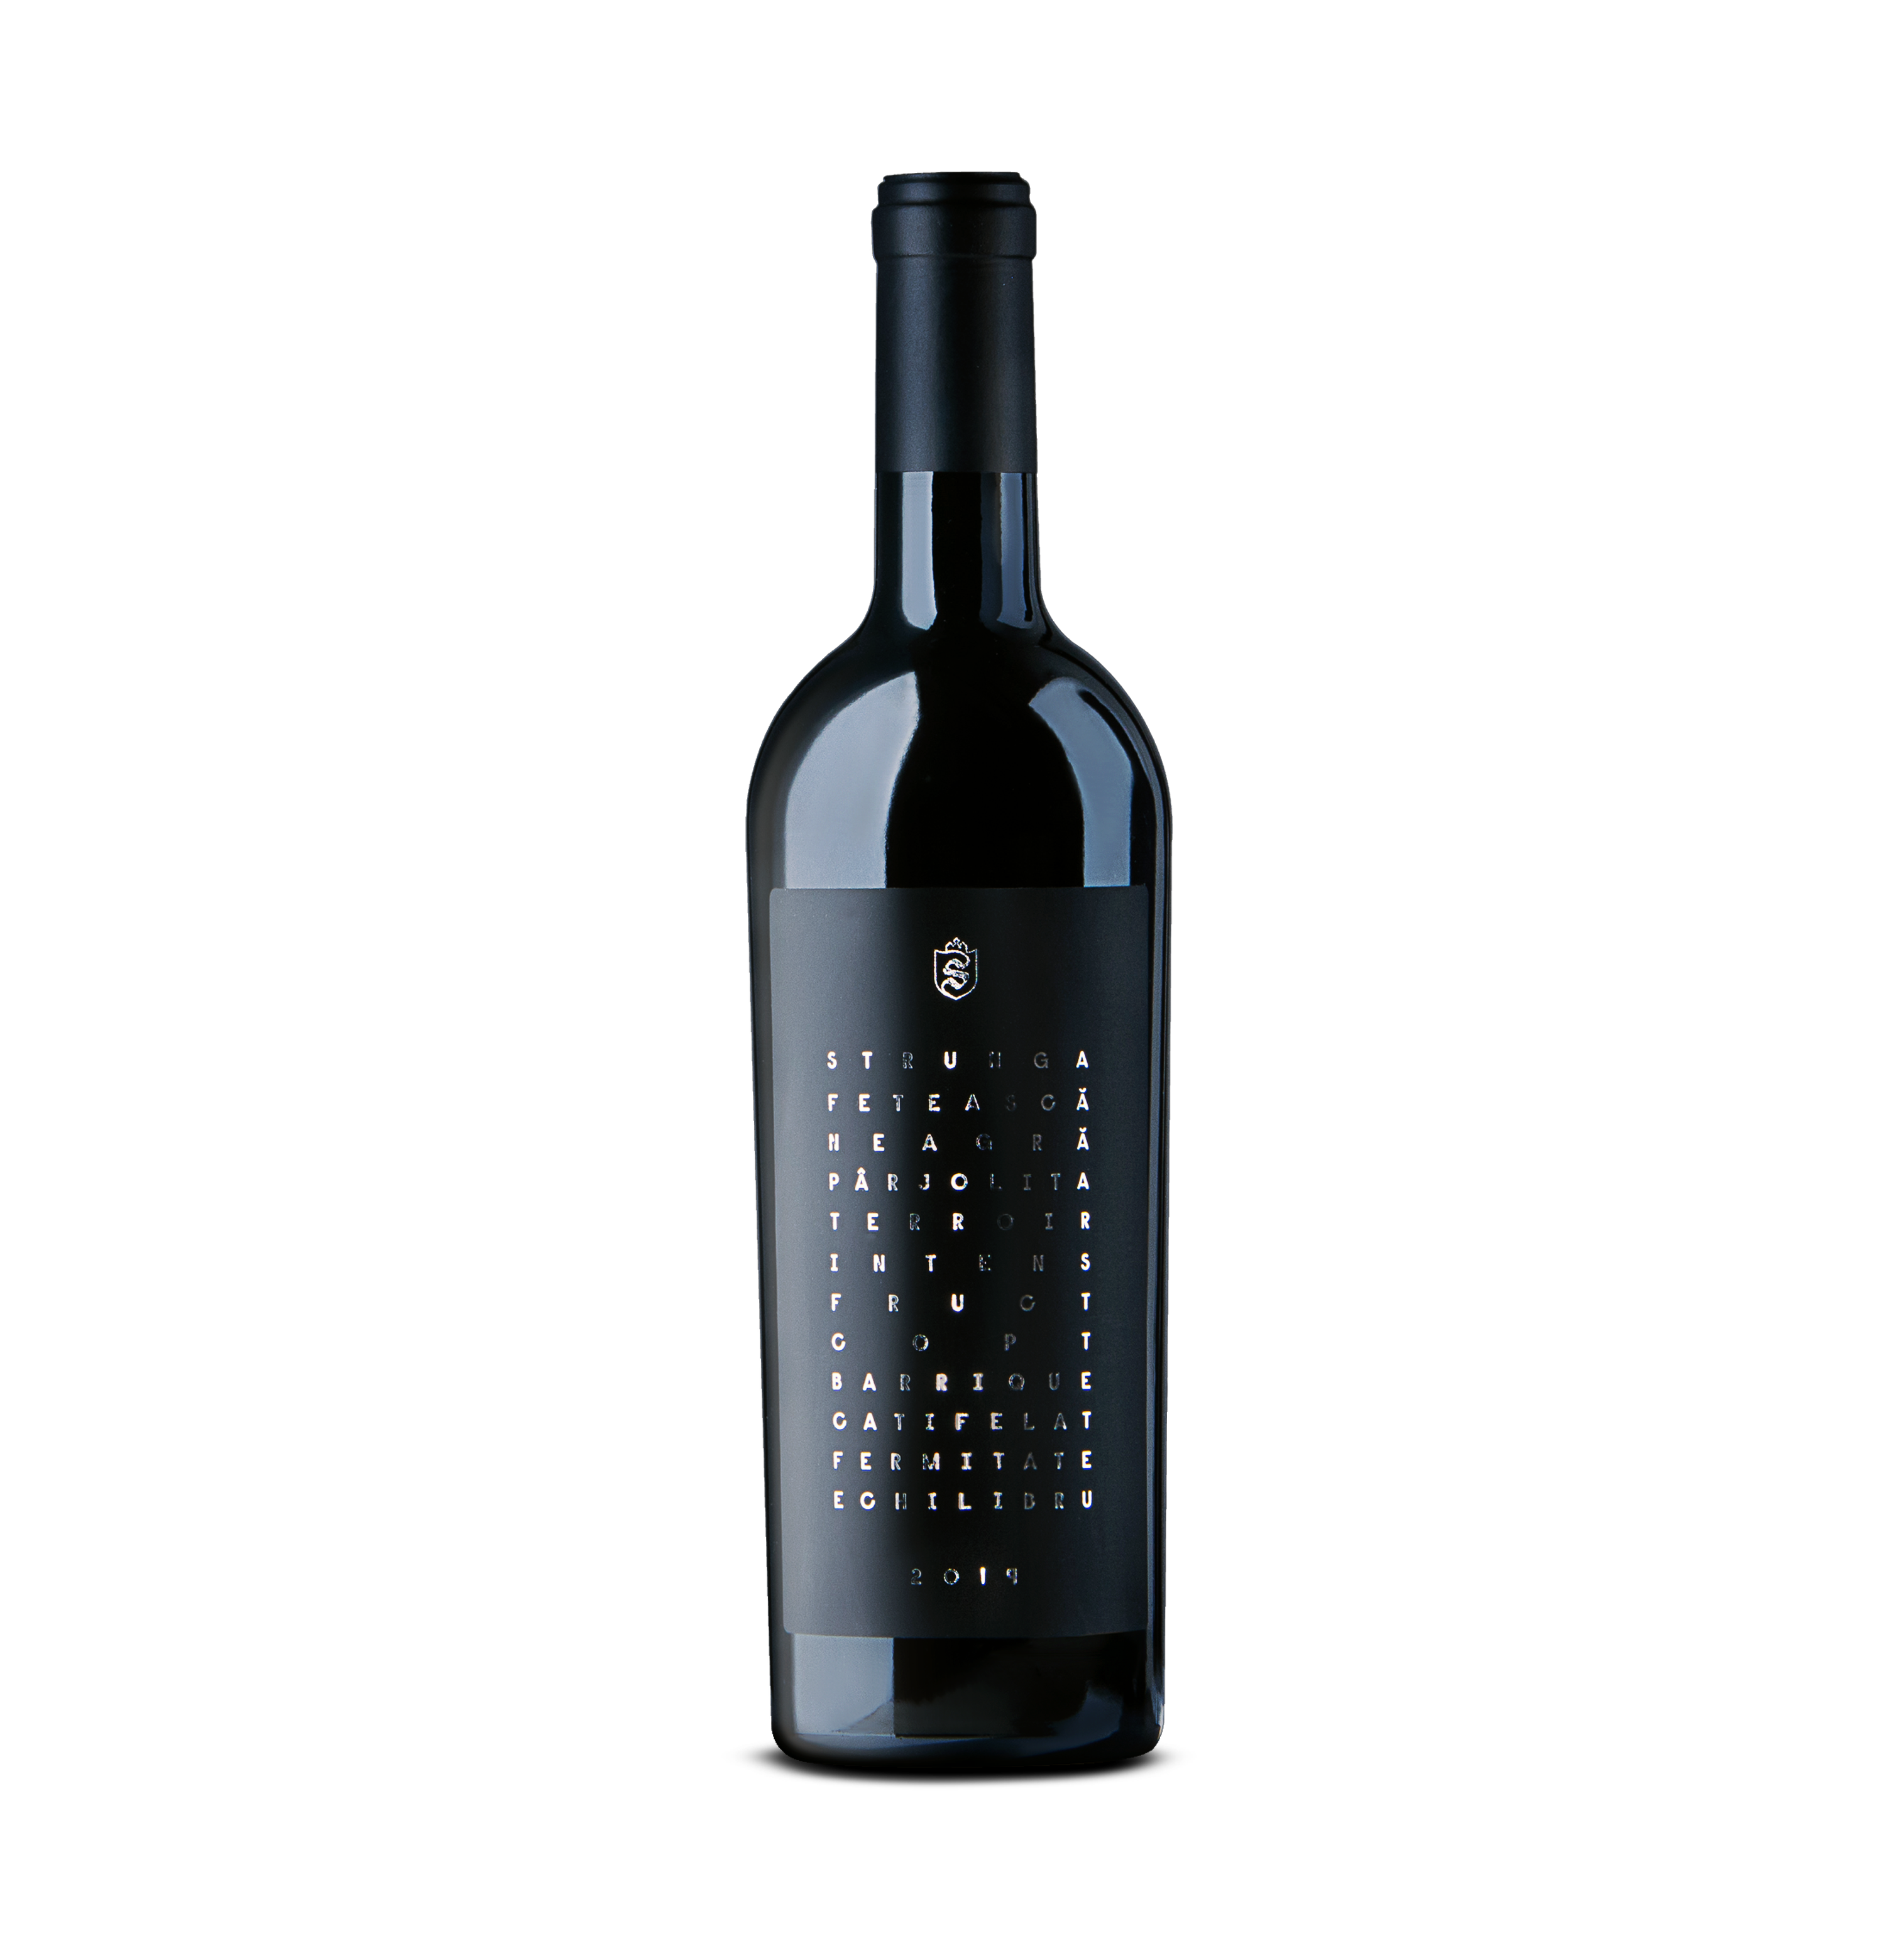  Vin rosu - Strunga, Feteasca Neagra barrique, sec, 2019 | Strunga 